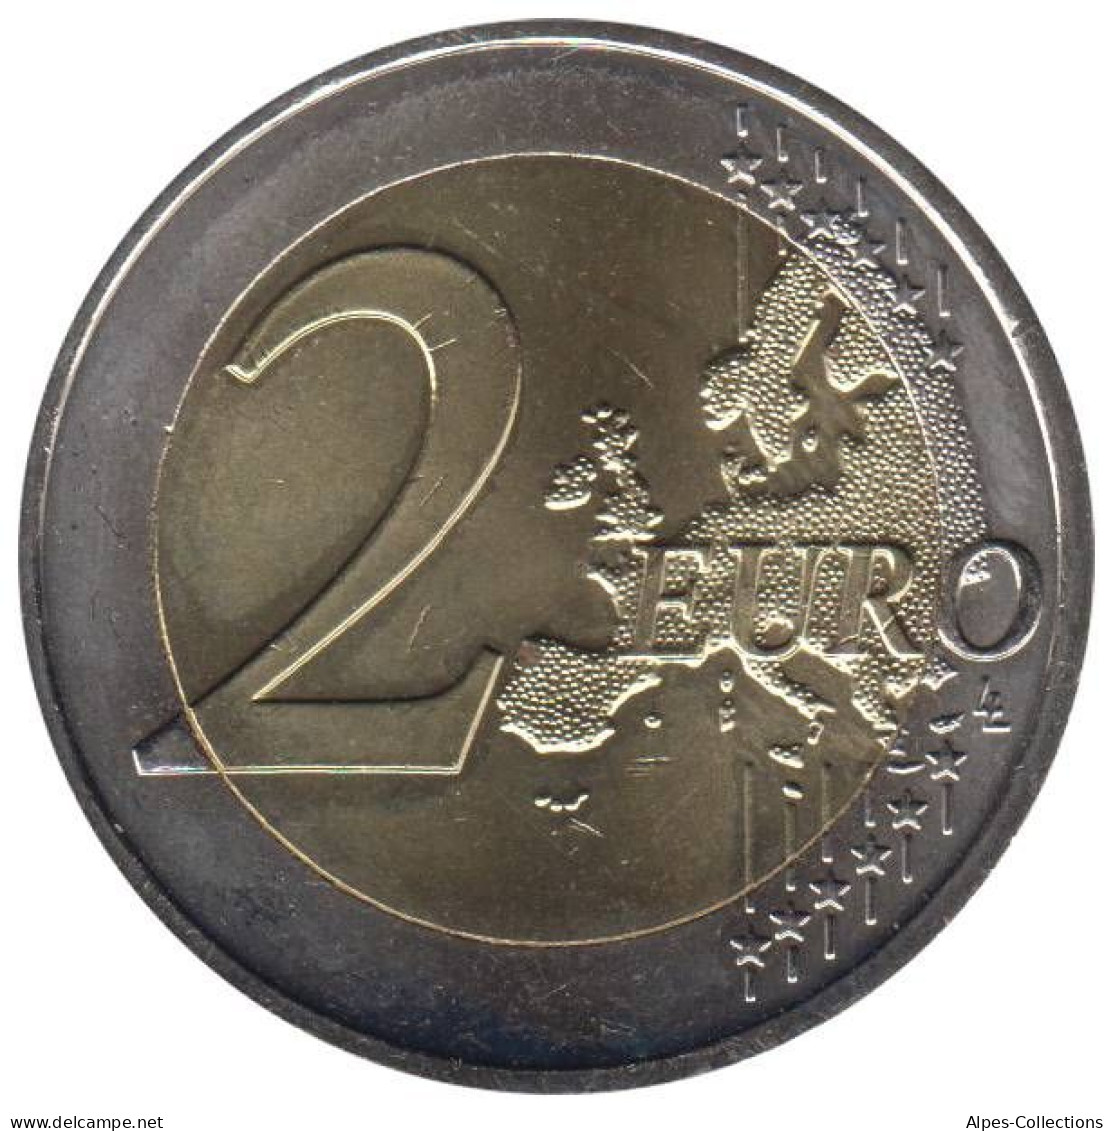 AU20009.1 - AUTRICHE - 2 Euros Commémo. 10 Ans De L'UEM - 2009 - Oesterreich